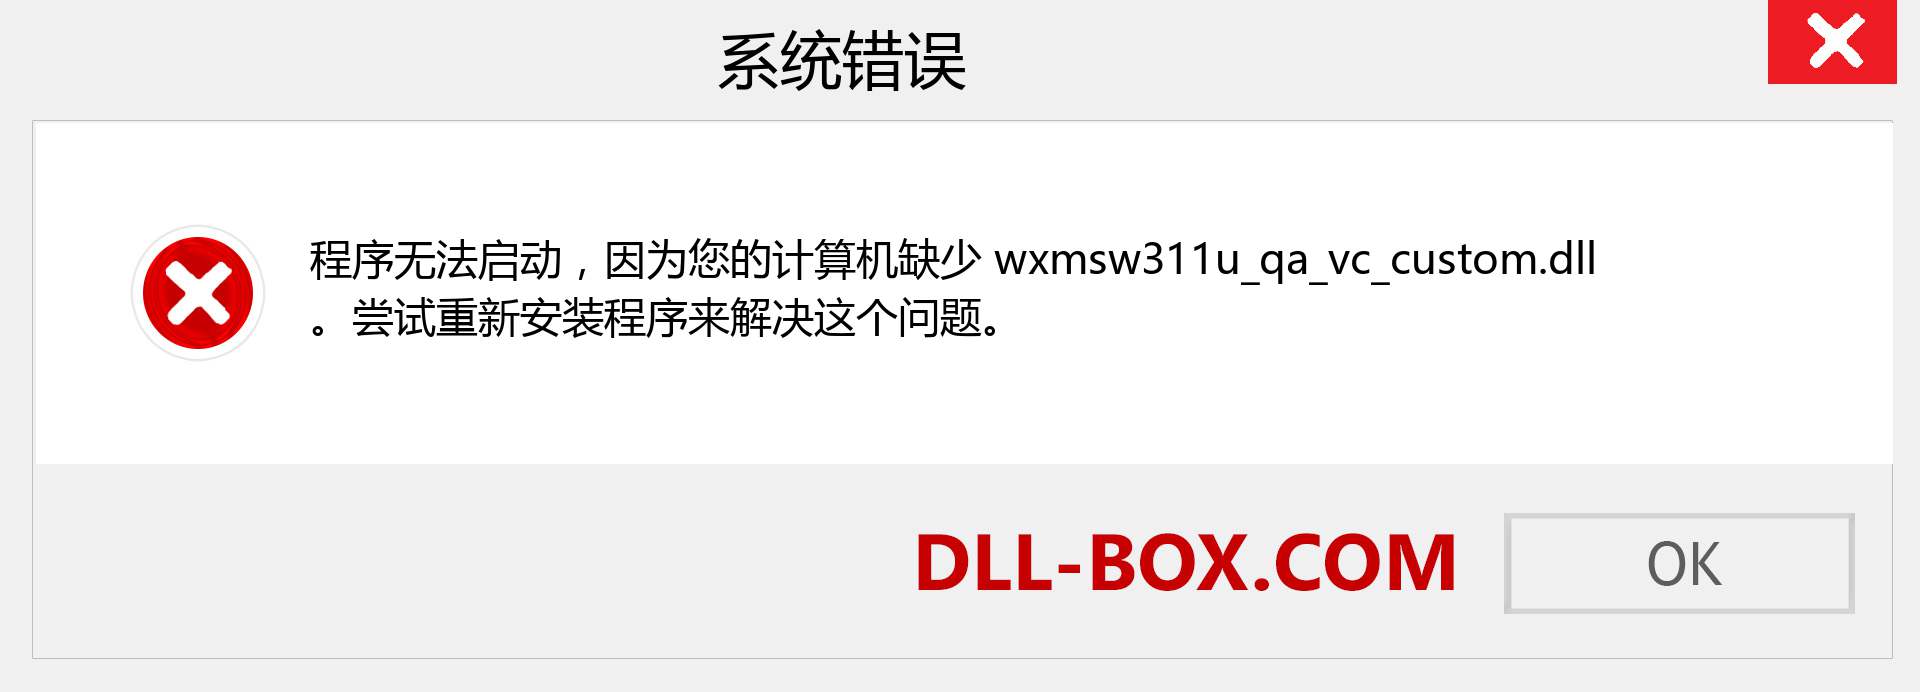 wxmsw311u_qa_vc_custom.dll 文件丢失？。 适用于 Windows 7、8、10 的下载 - 修复 Windows、照片、图像上的 wxmsw311u_qa_vc_custom dll 丢失错误